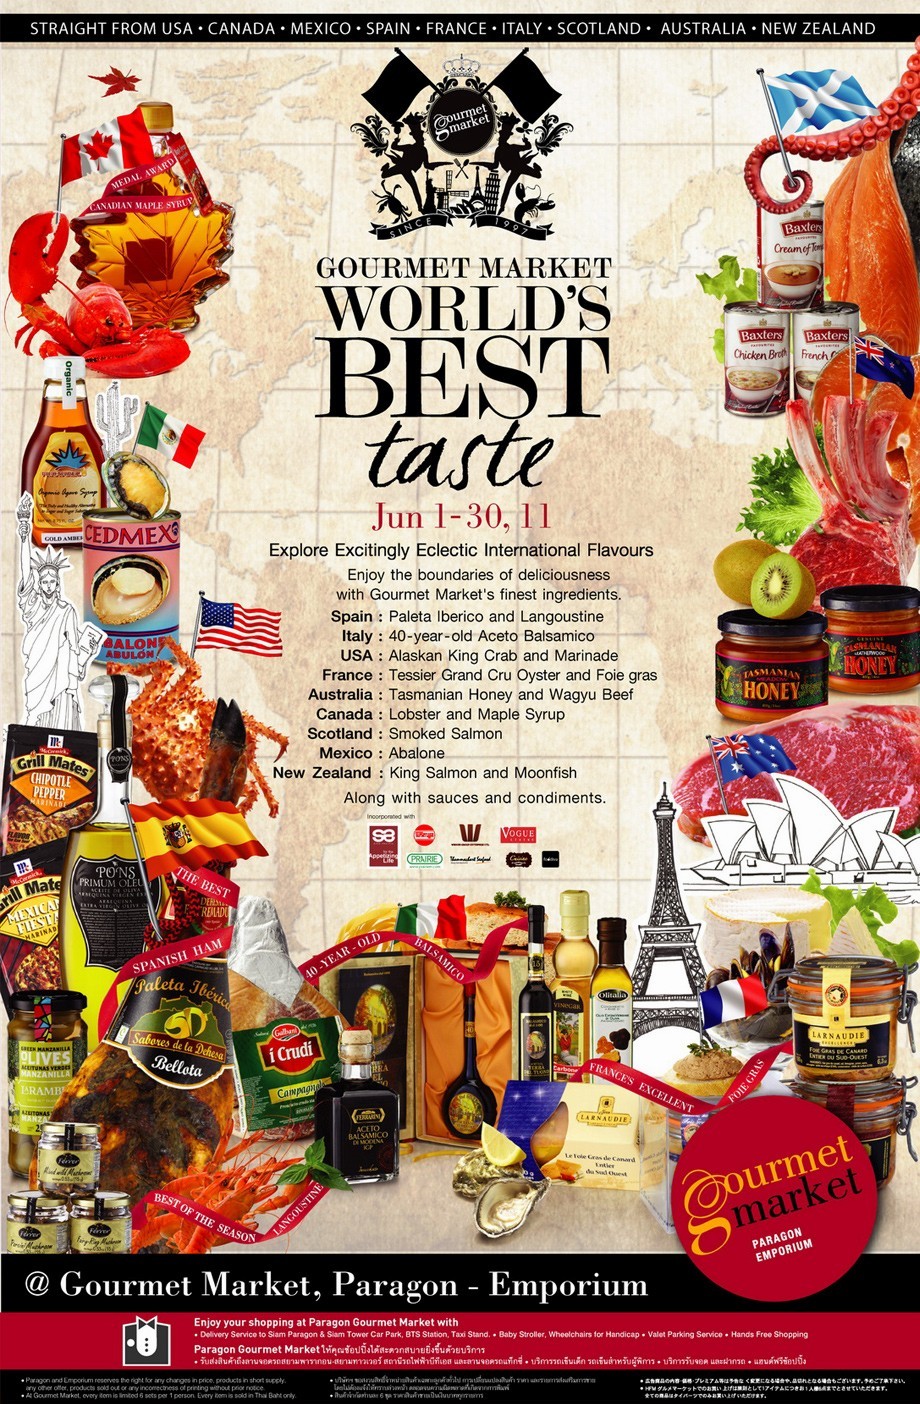 Gourmet Market World's Best Taste